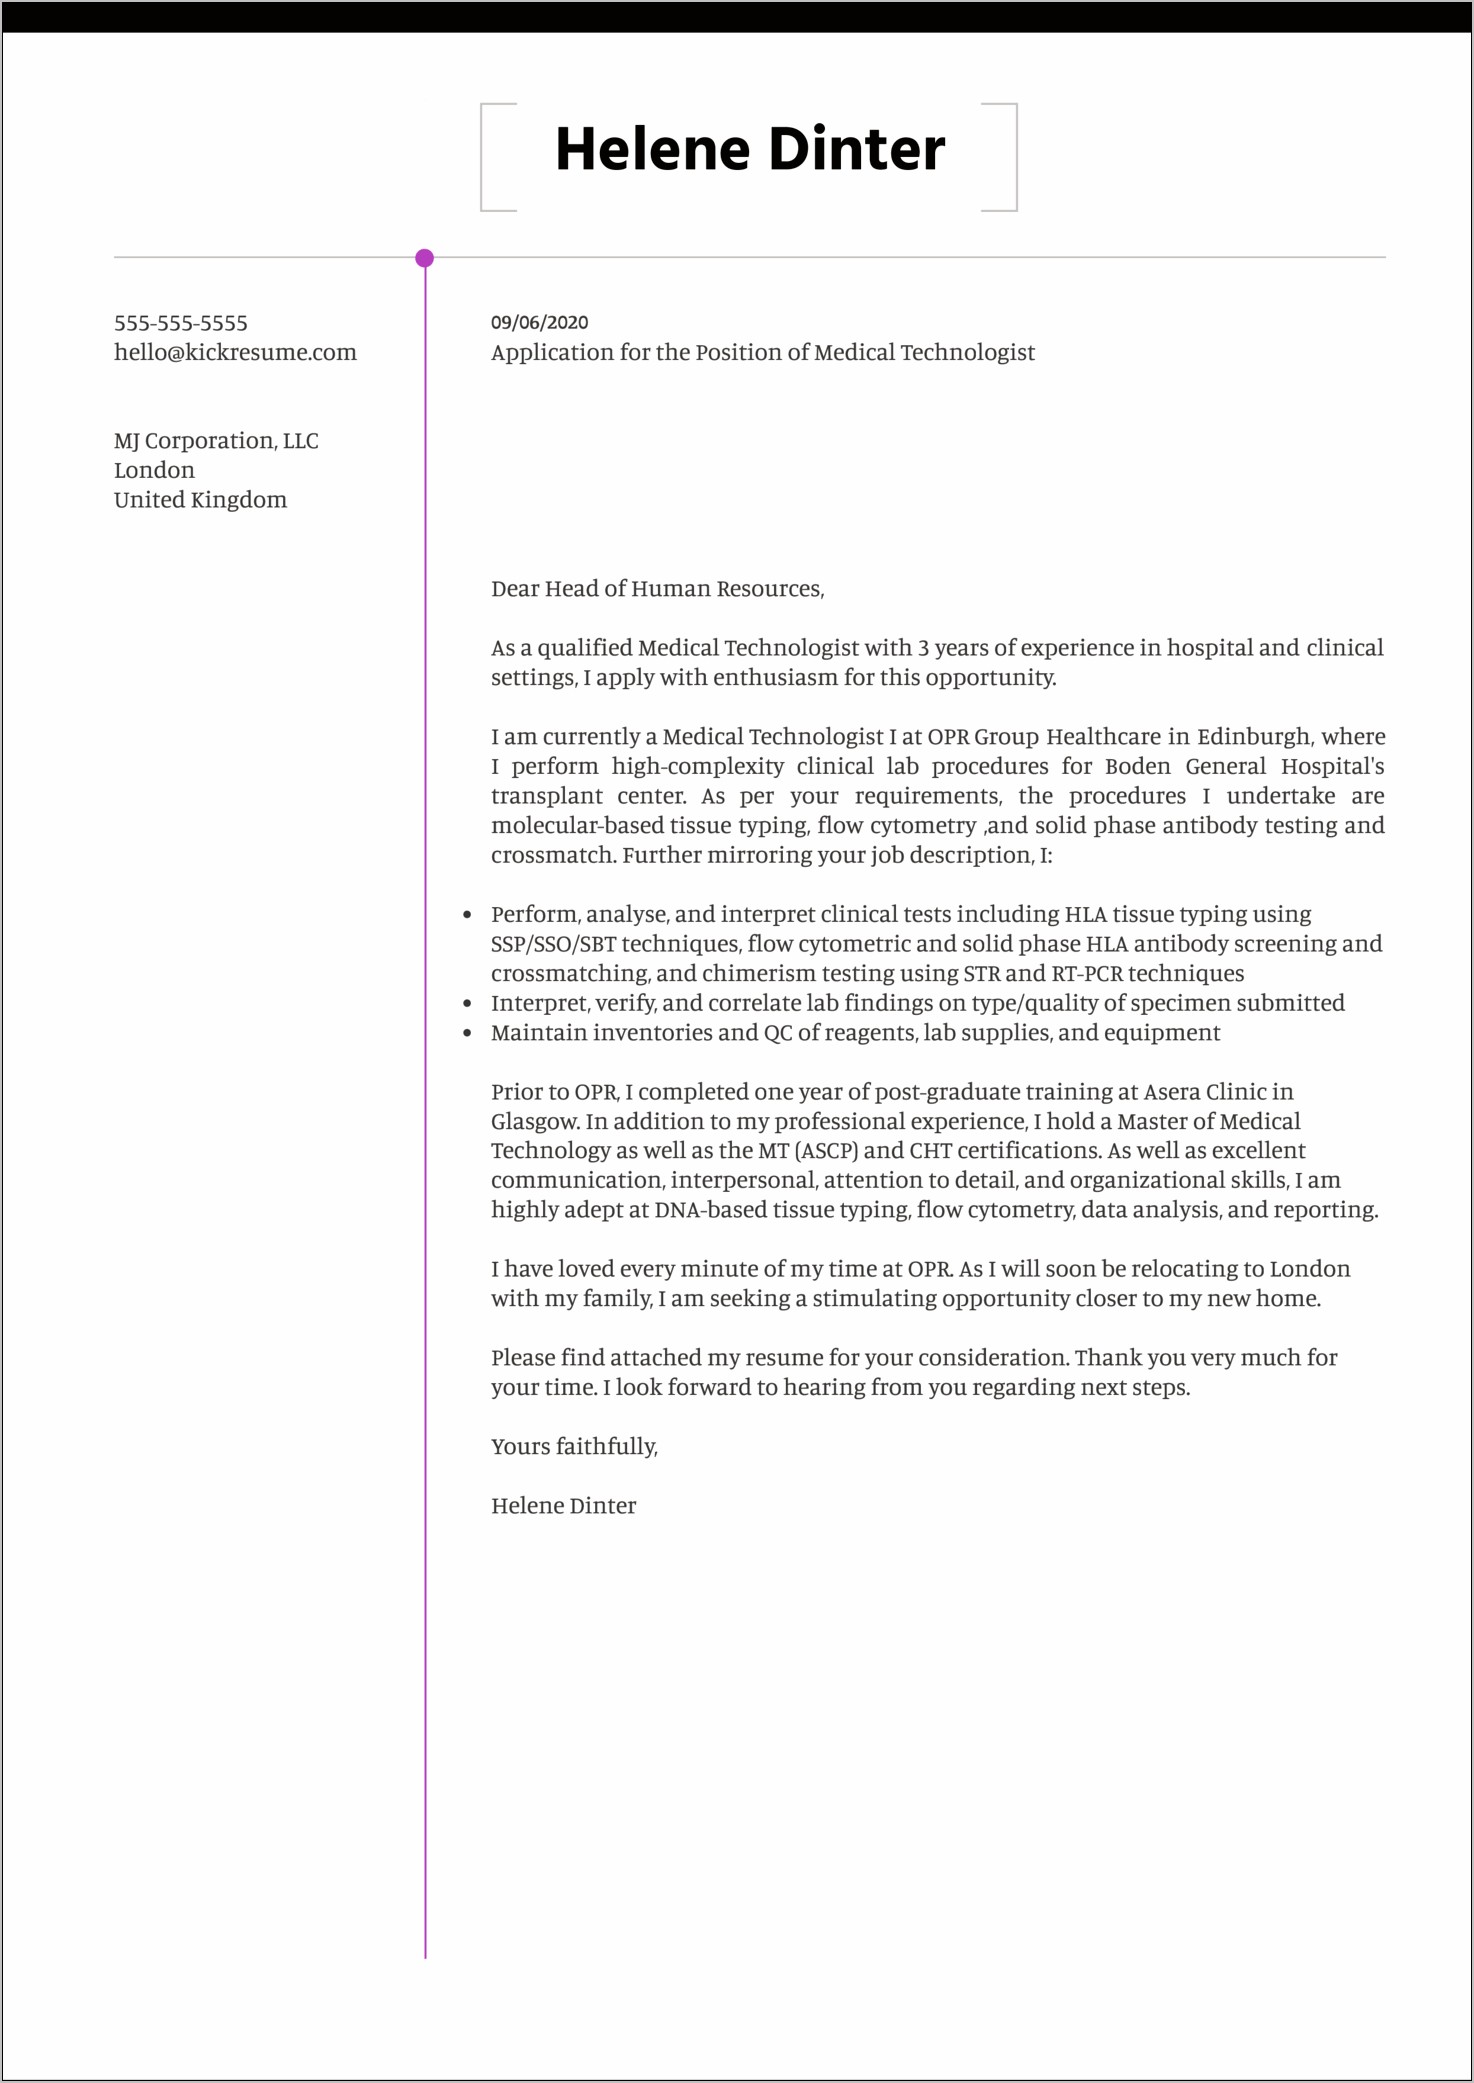 Sample Resume Cover Letter For Histotechnologist Jobs